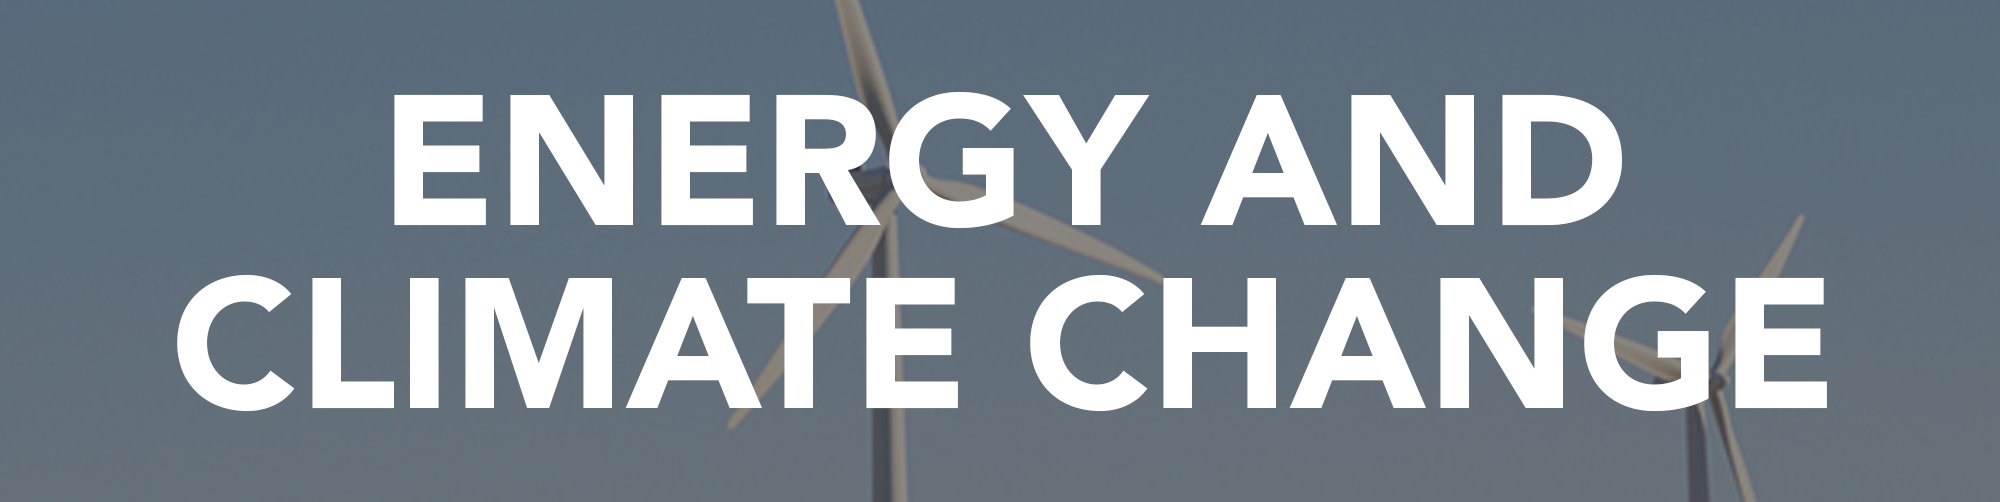 Información y artículos sobre energía y cambio climático